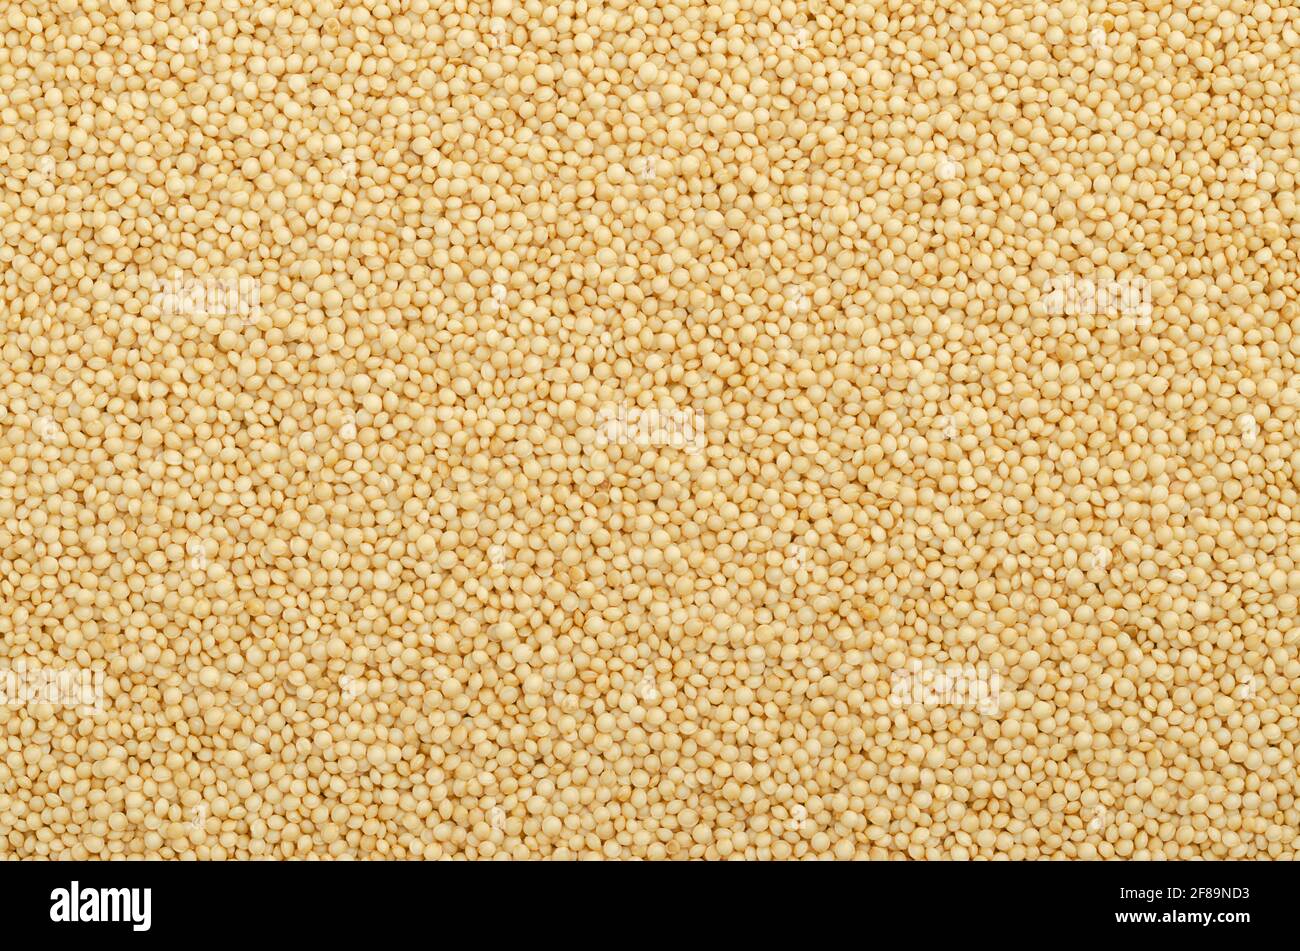 Amaranth Korn Oberfläche und Hintergrund. Kleine Samen von Amaranthus, einem glutenfreien Pseudozereal ähnlich Quinoa, ein Hauptnahrungsmittel und Proteinquelle. Stockfoto